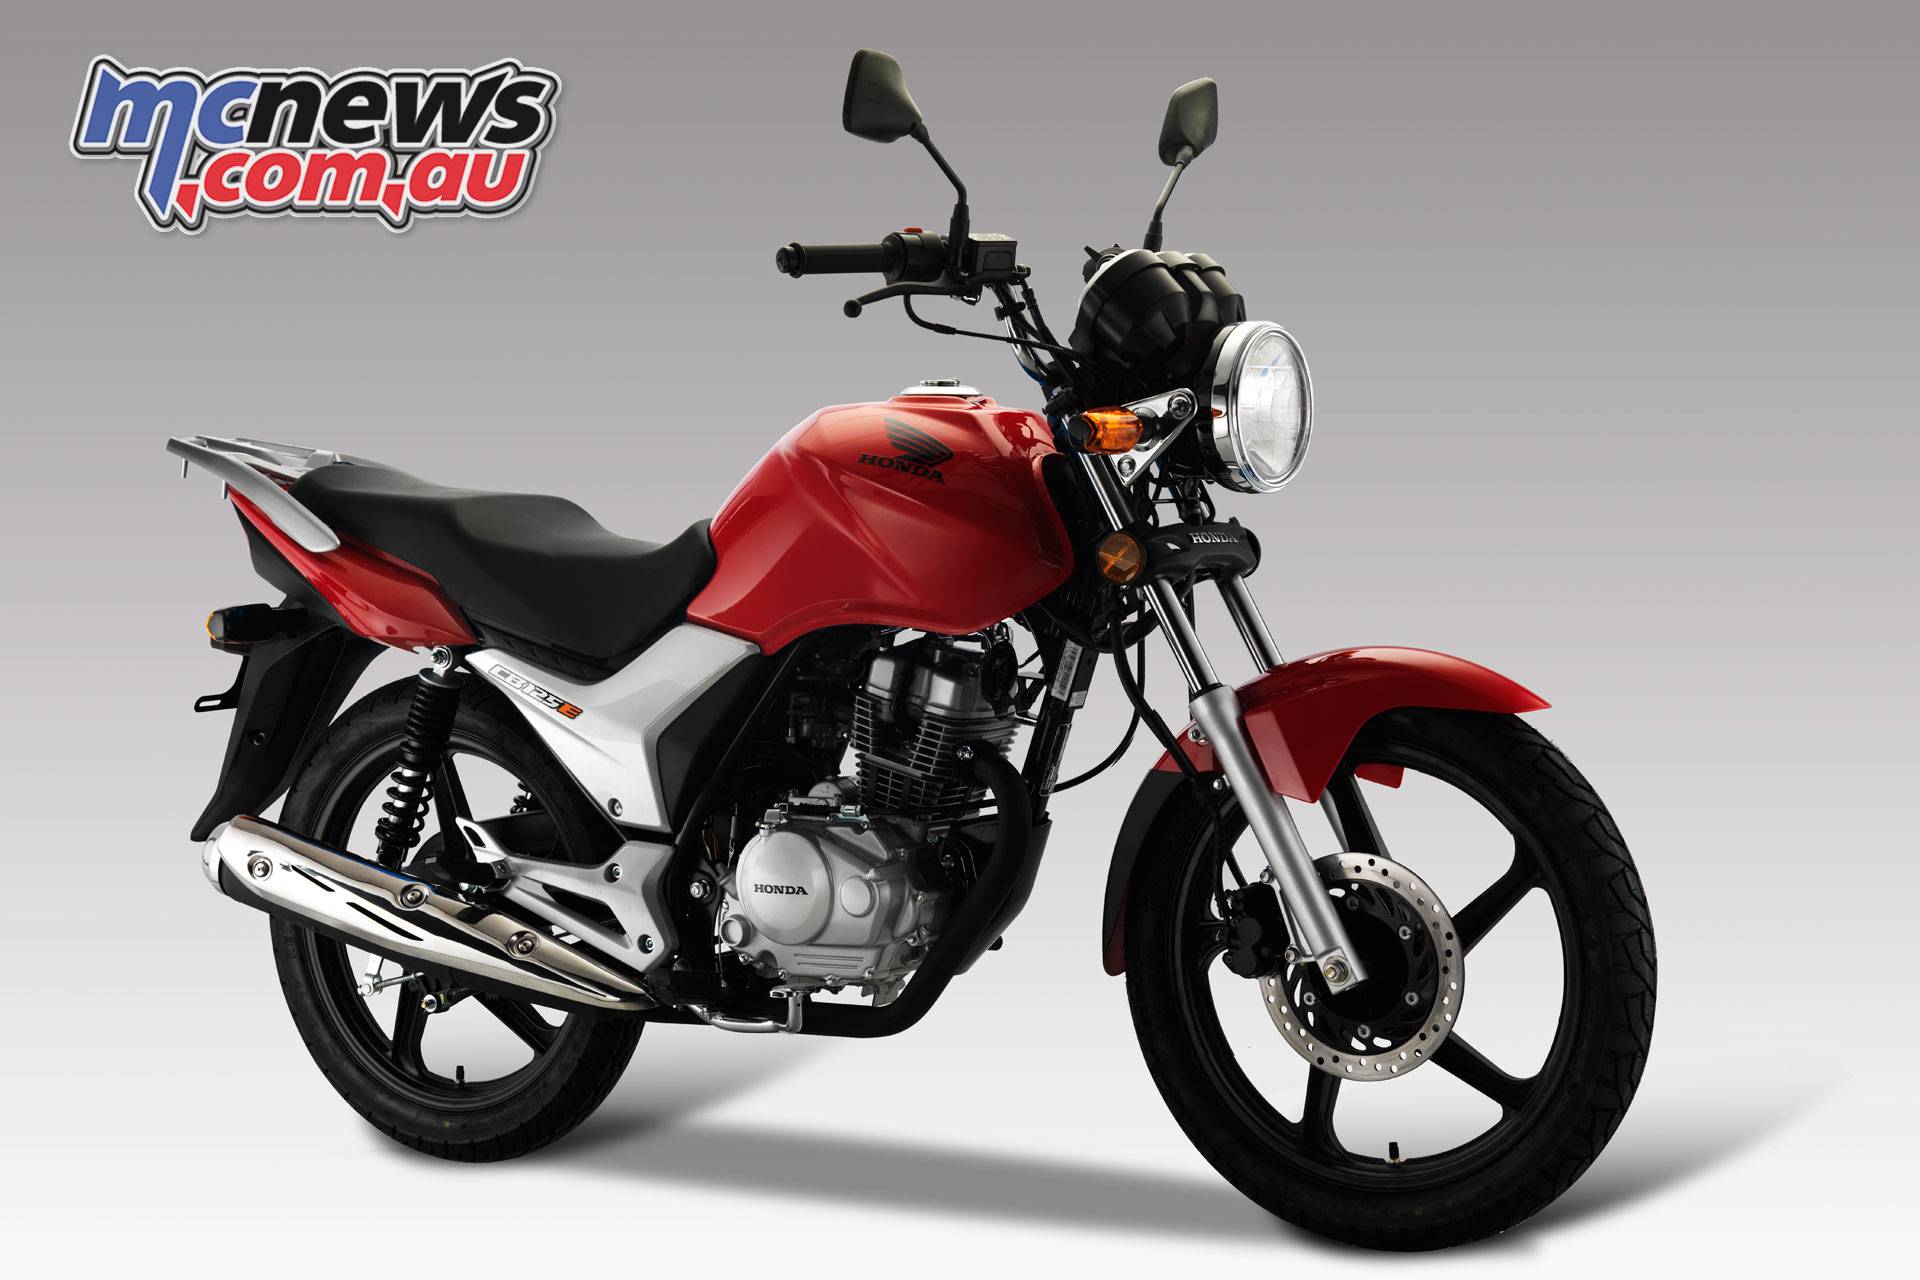 Honda cr 125 — отличный кроссовый мотоцикл